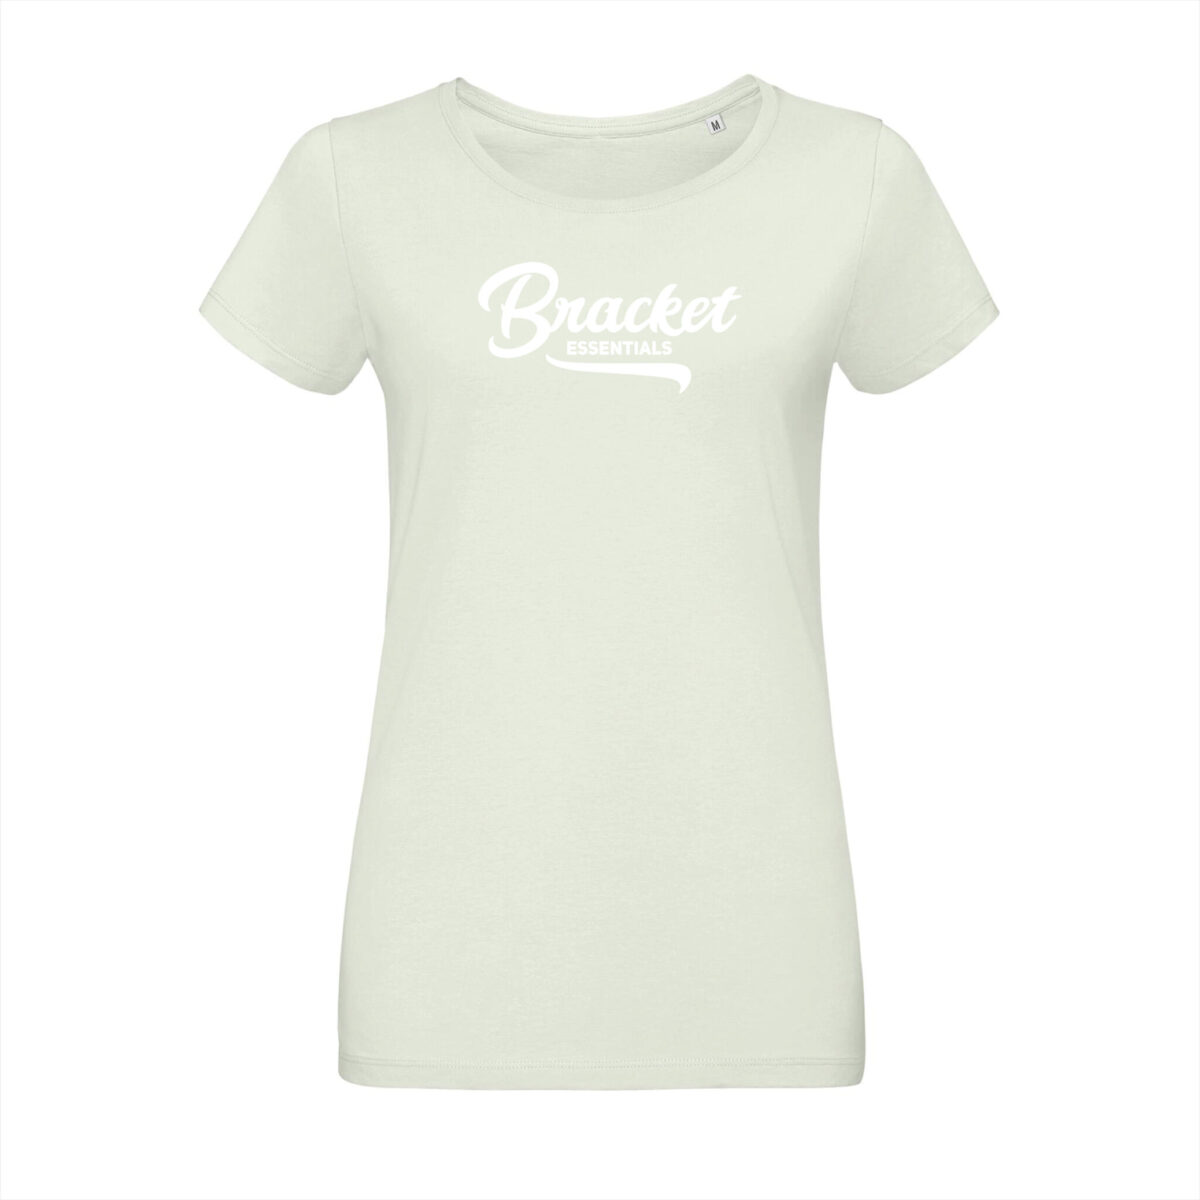 Bracket Essentials T-shirt Mint Groen - Bracket